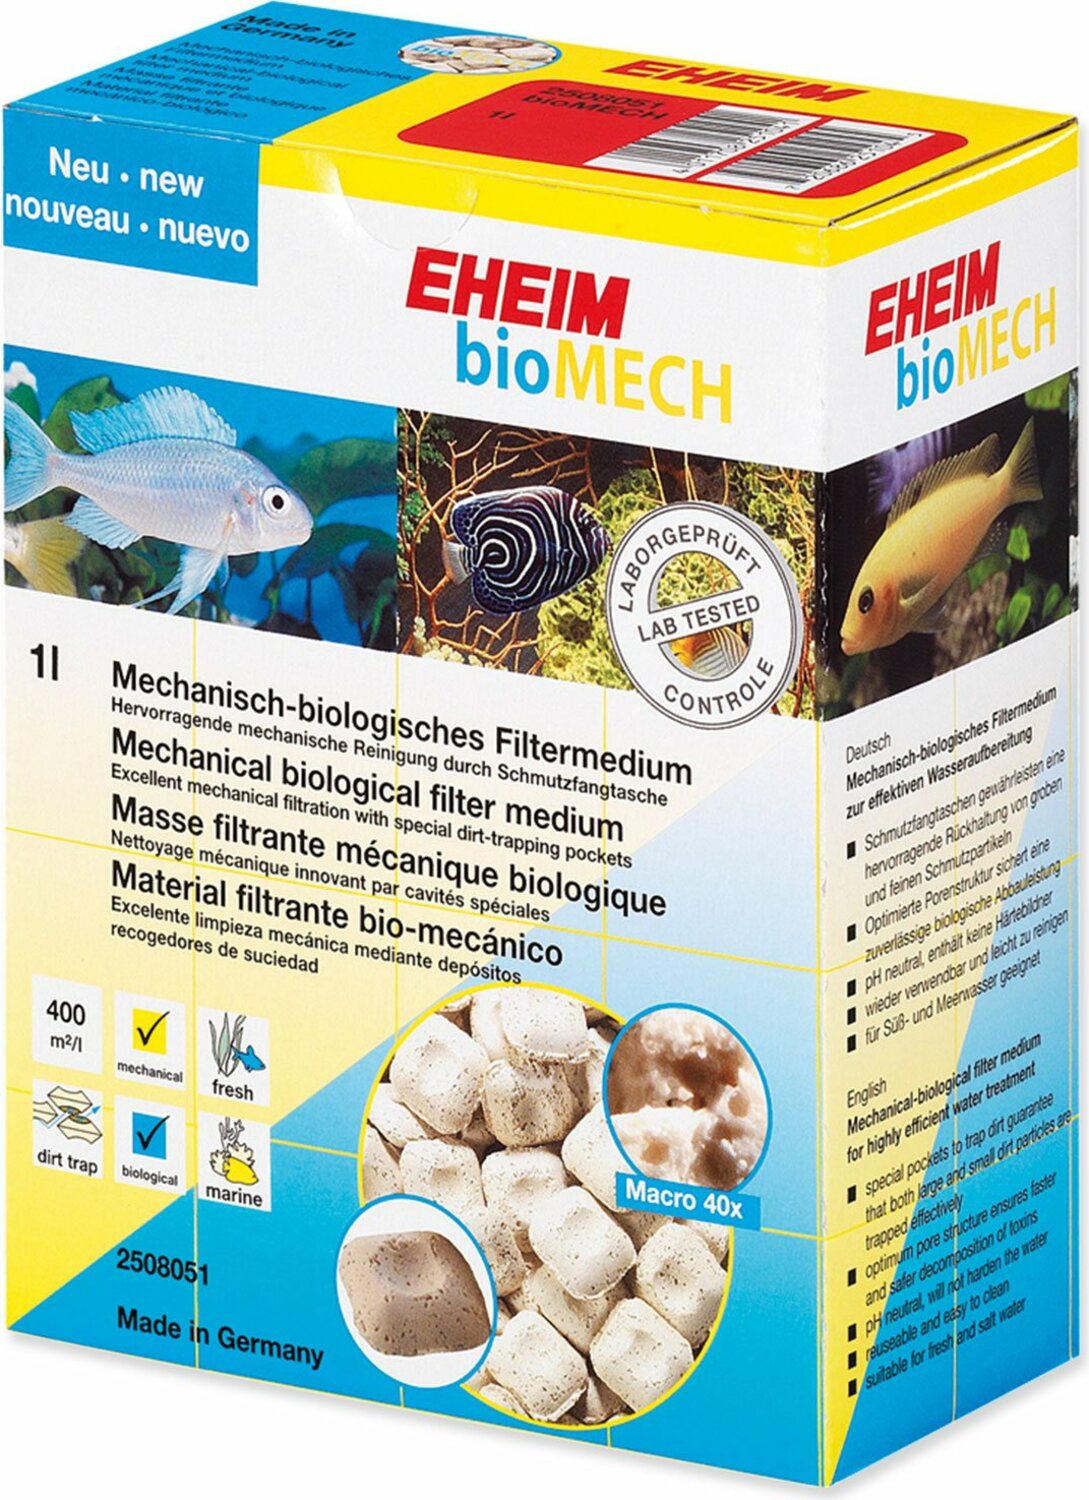 Náplň Eheim bioMECH 710g, 1l